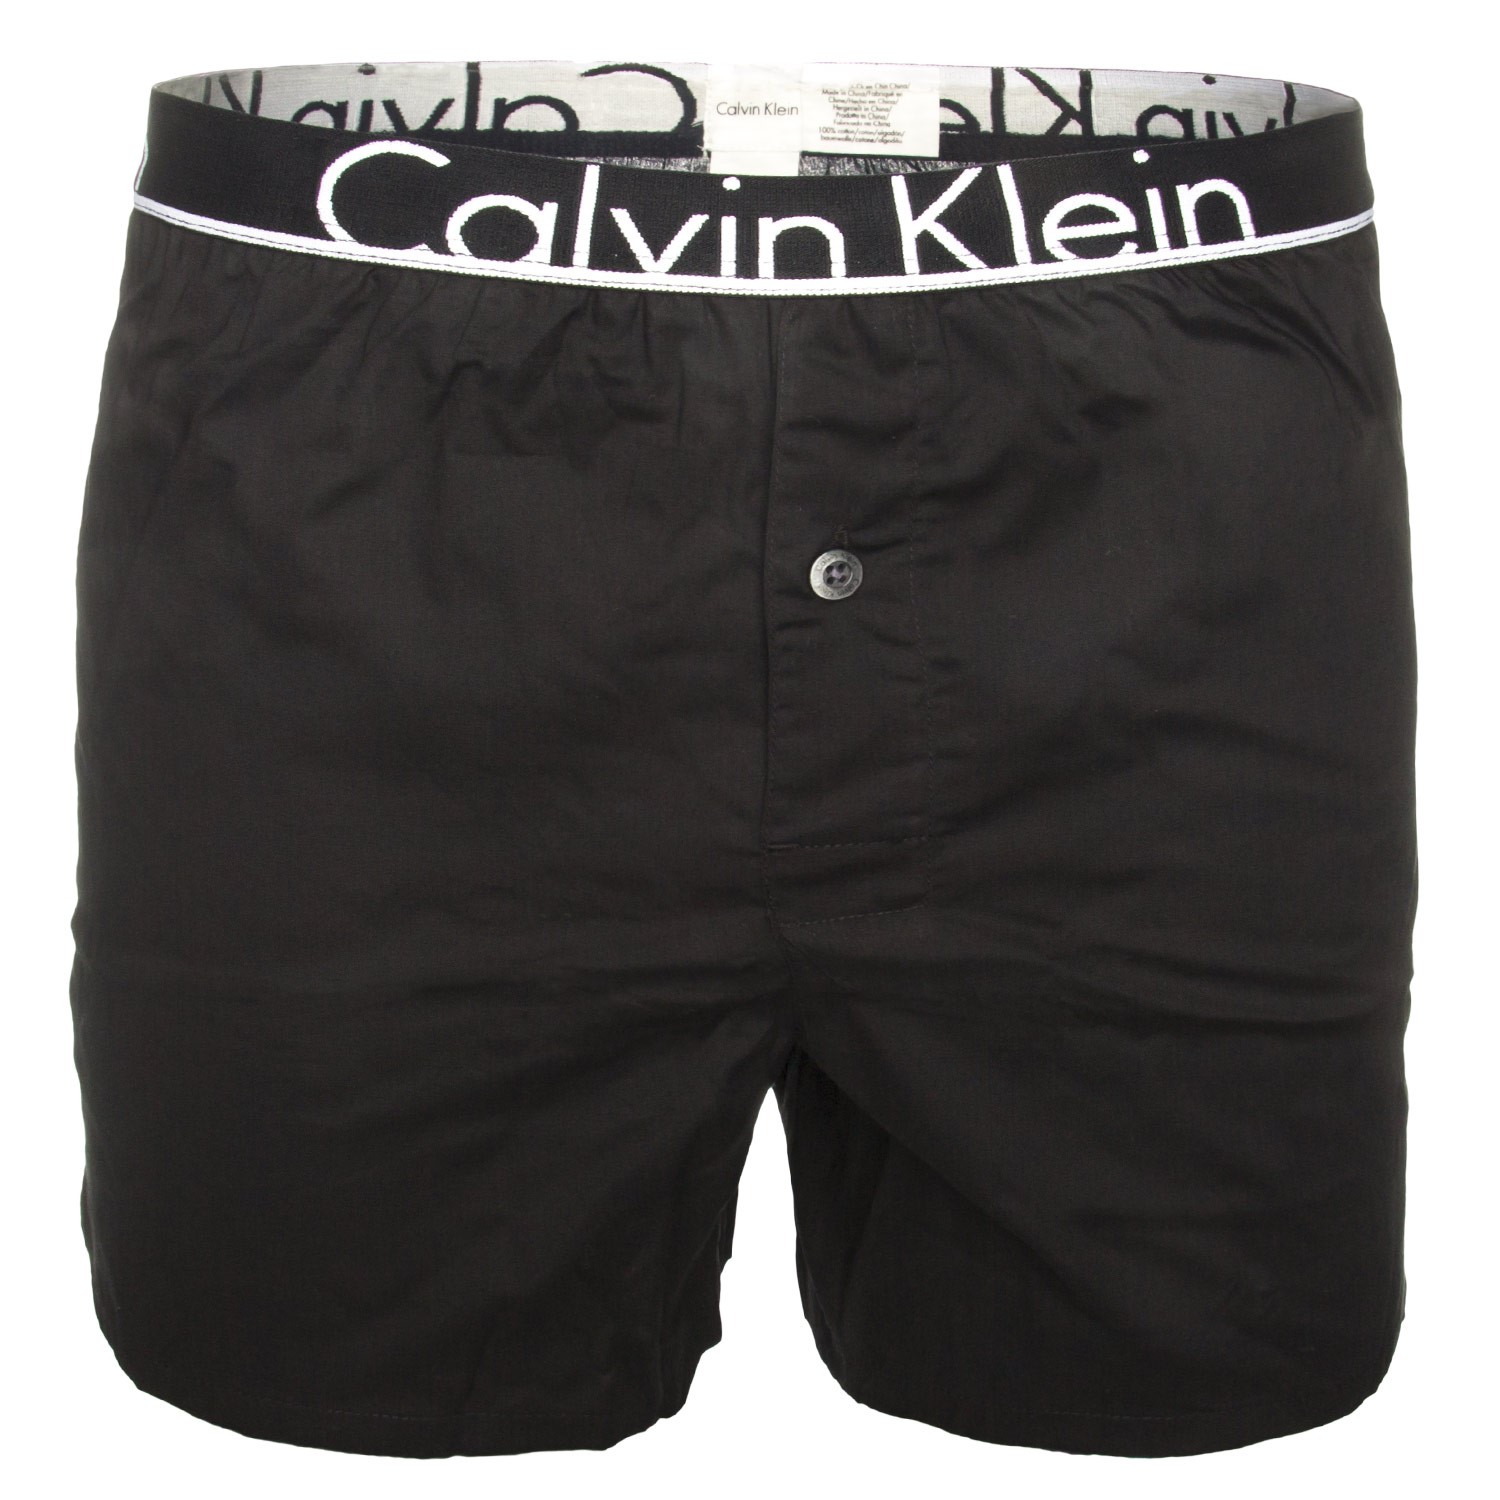 Calvin Klein ID Cotton Skinny Jean Boxer